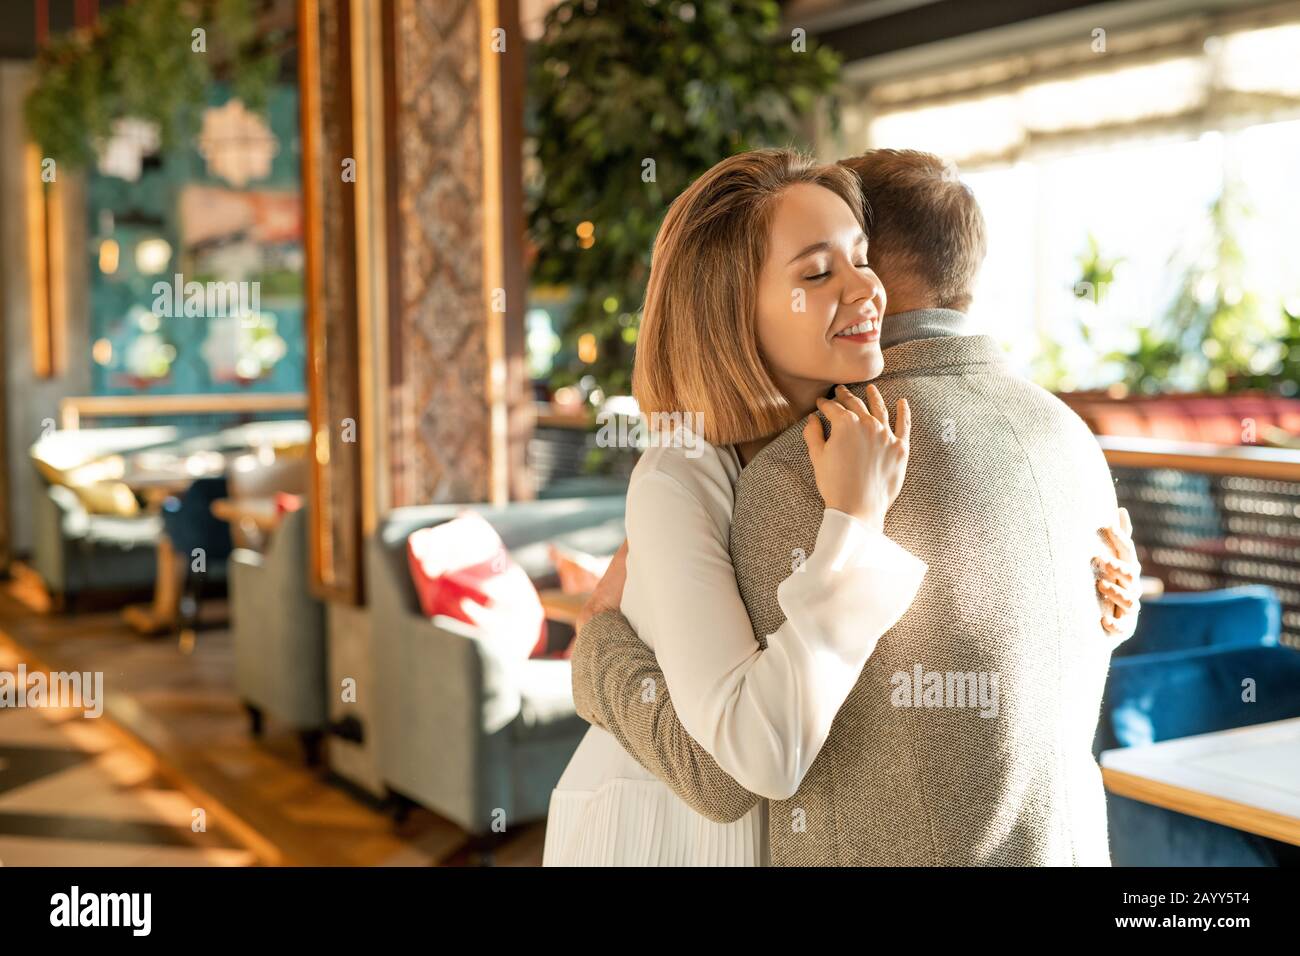 Un jeune homme et une femme heureux adorent se saluer les uns les autres avec un câlin dans un restaurant moderne, horizontal moyen shot Banque D'Images